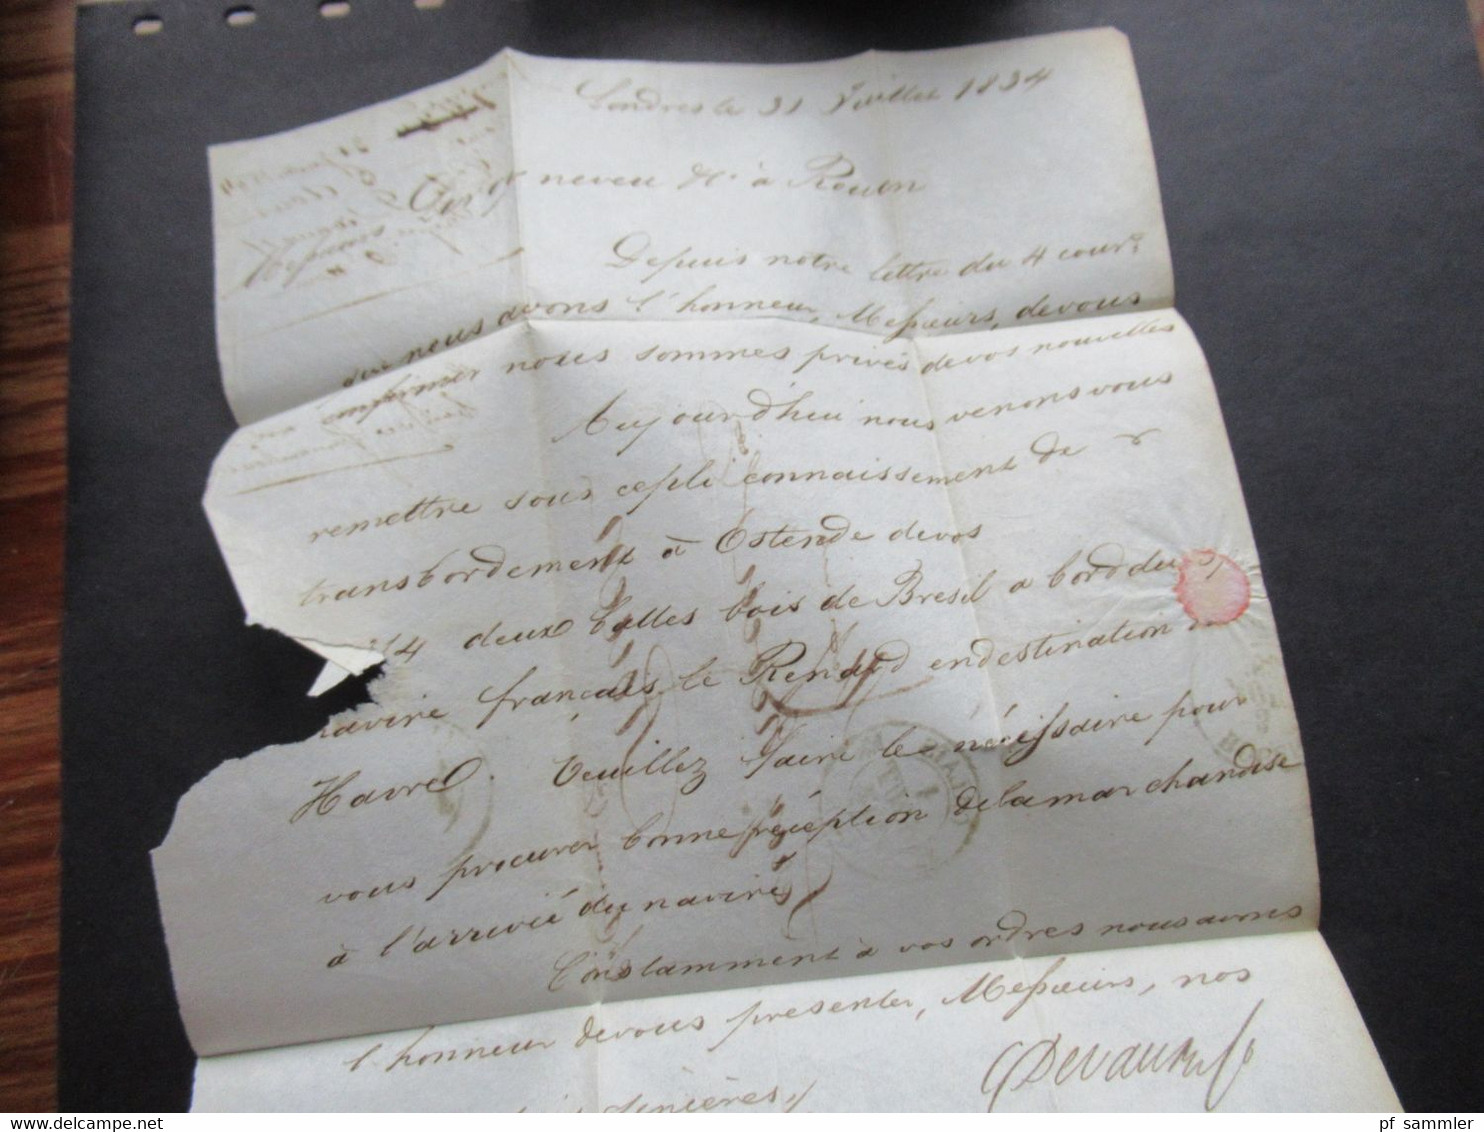 GB 31.7.1834 Forwarded letter aus London via Calais Forwarder nach Rouen mit Ank. Stempel Faltbrief mit Inhalt